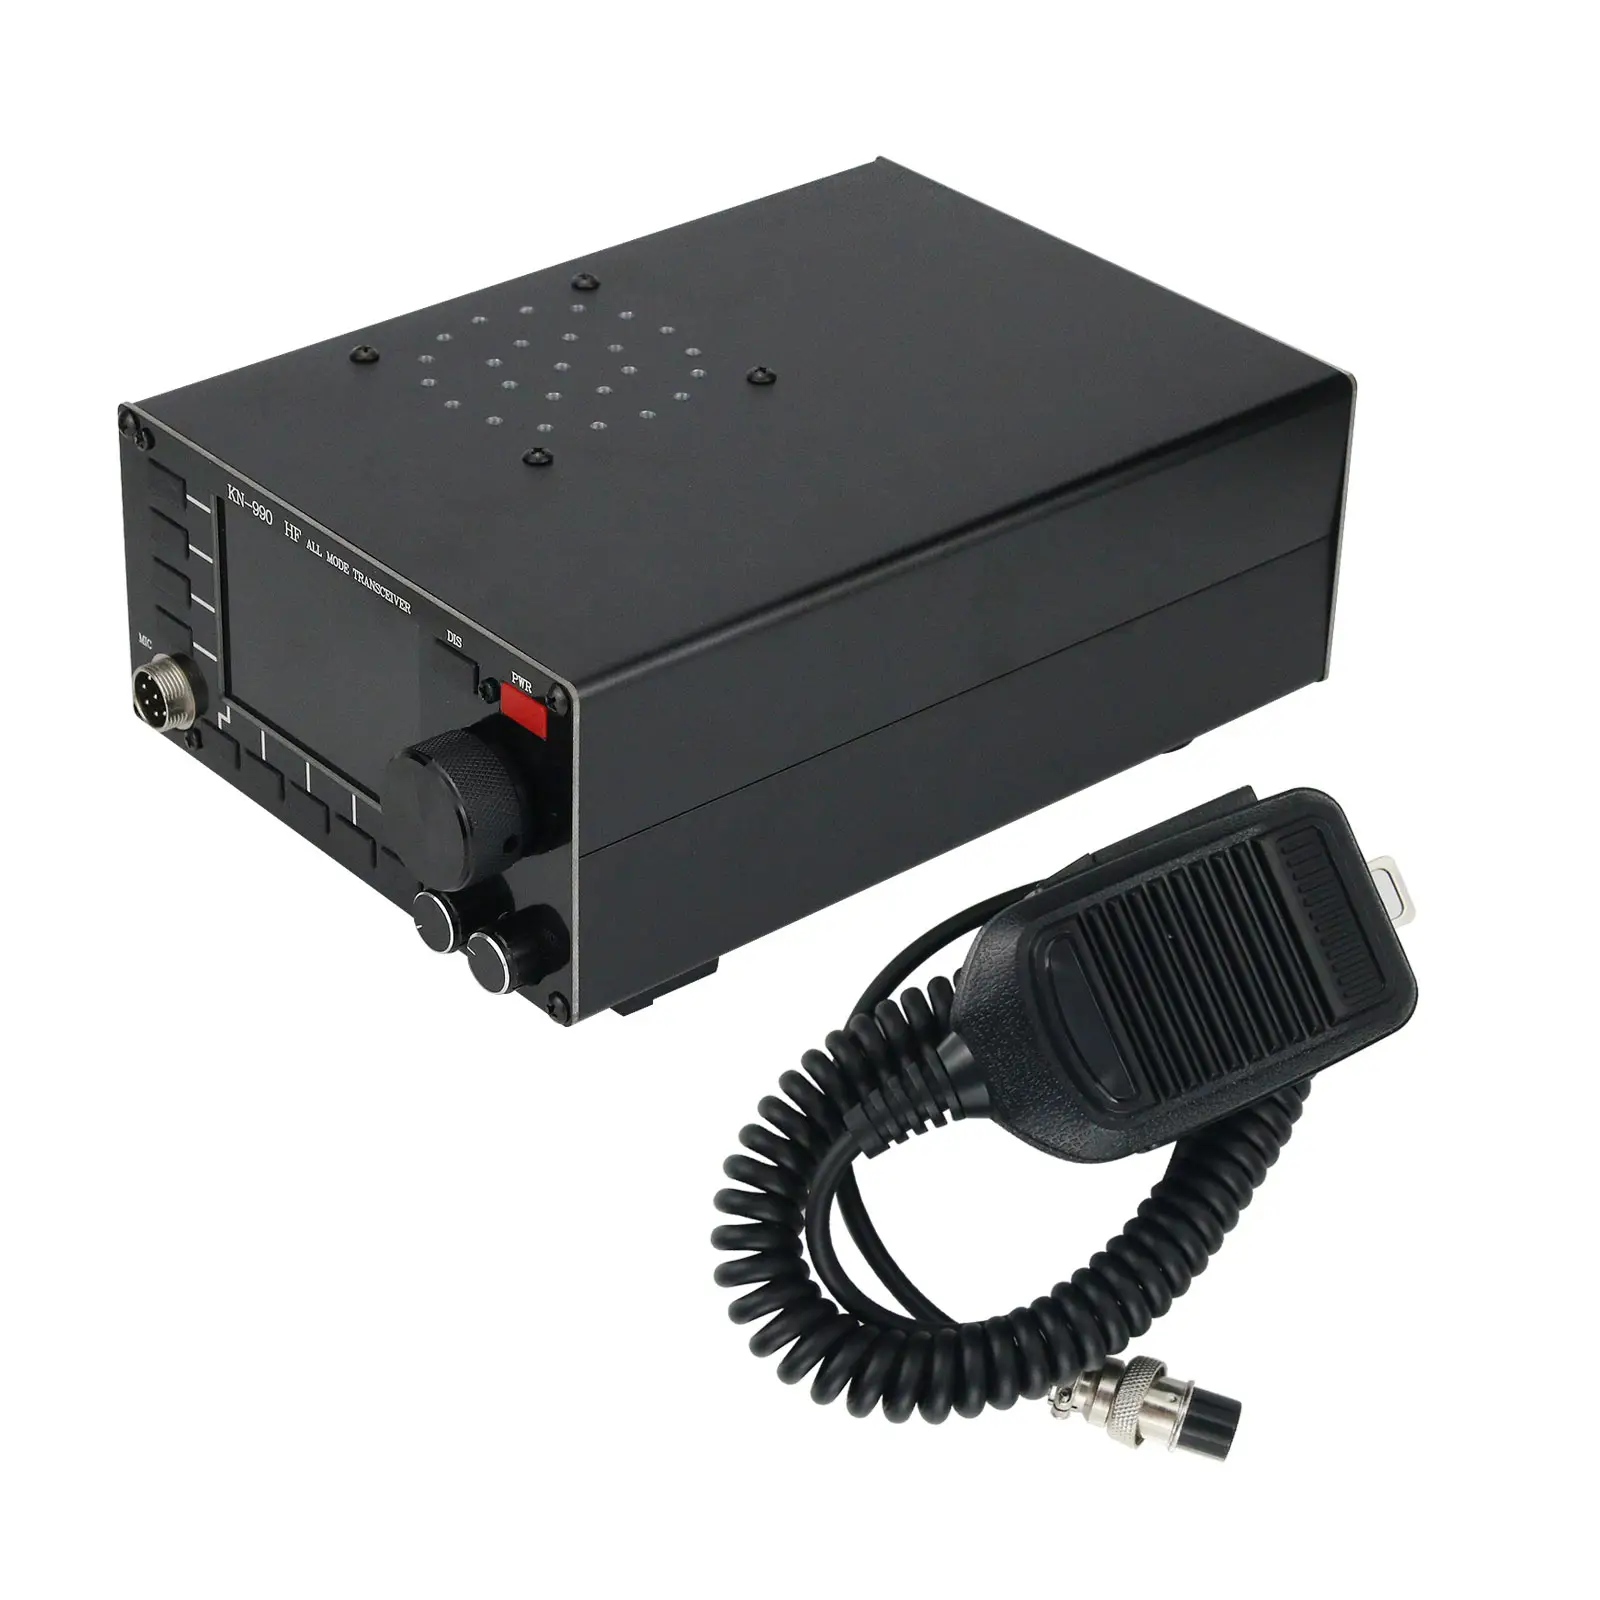 KN990HFオールモードレシーバートランスミッターSSB/CW/AM/FM/DIGITAL動作モード短波トランシーバー